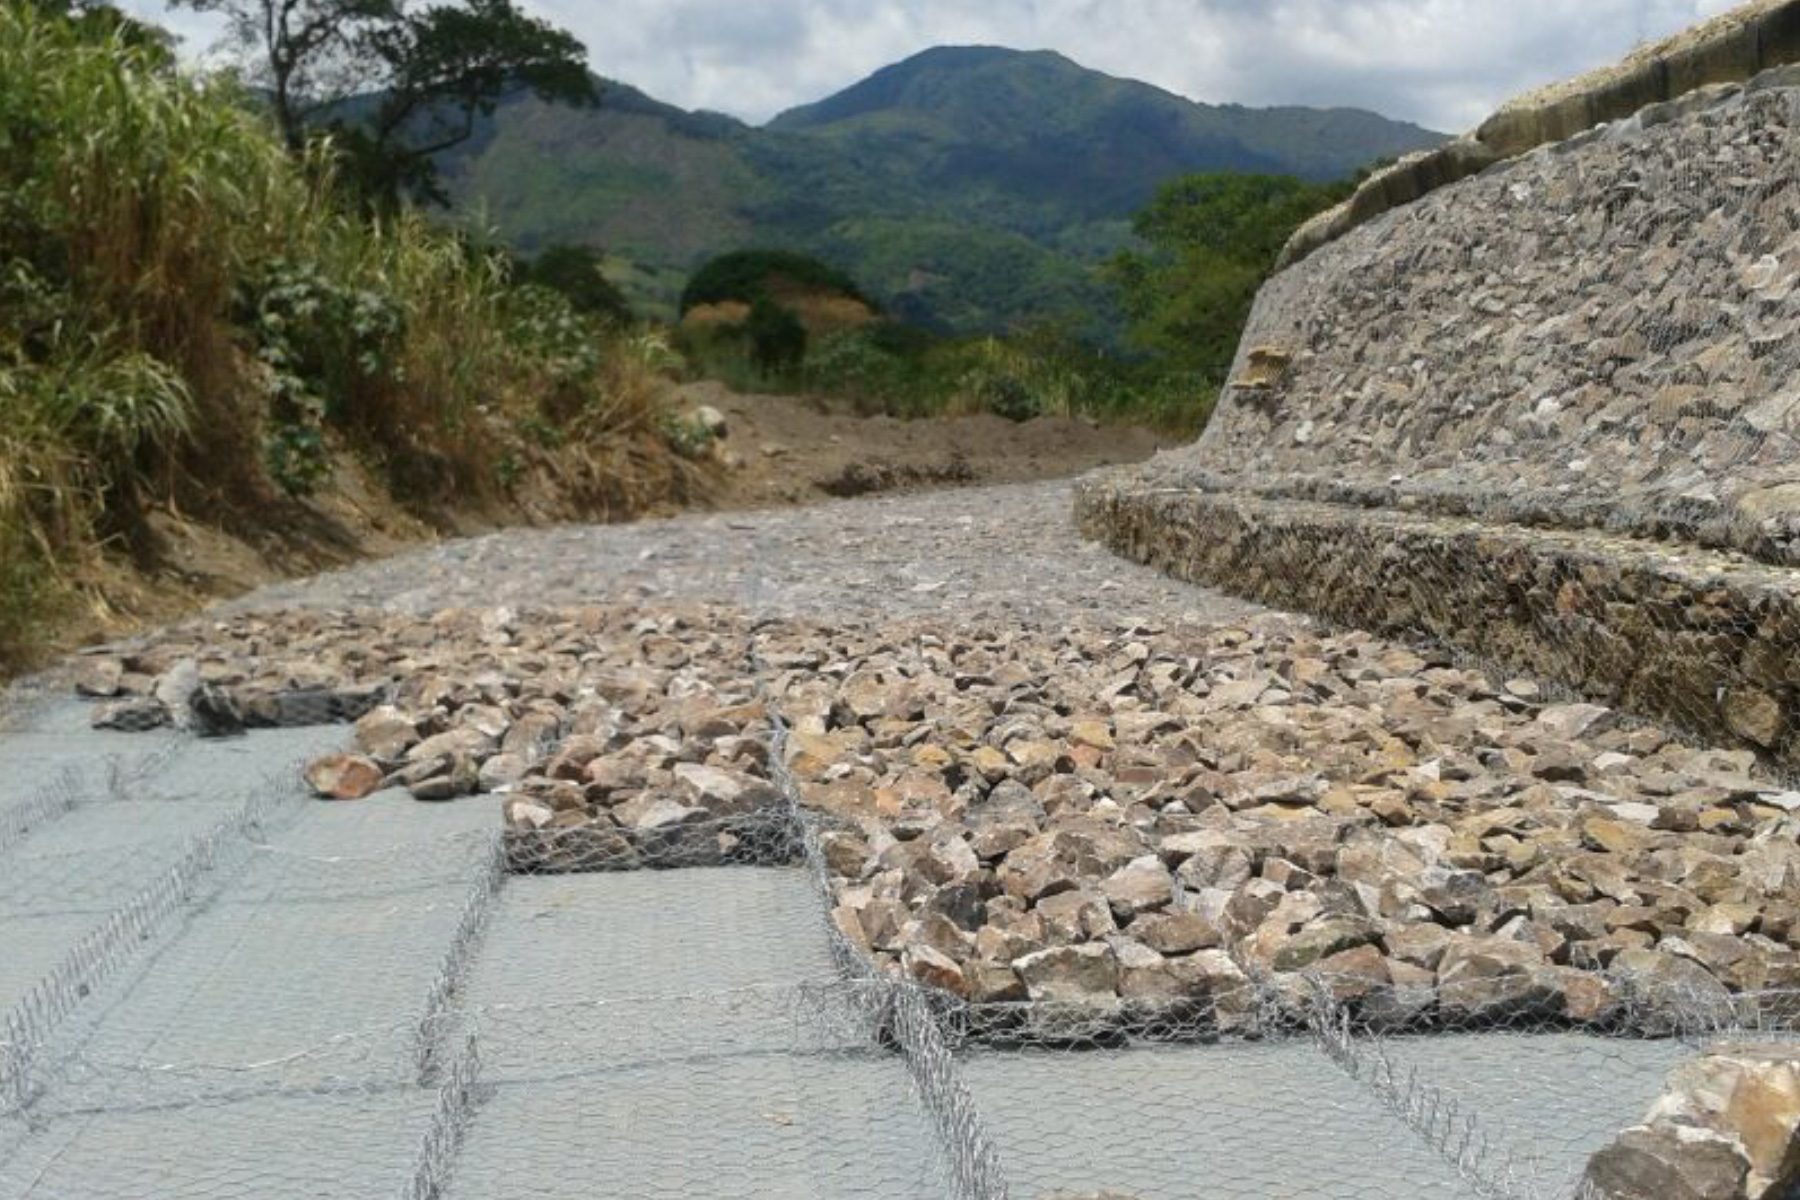 ￼￼Enrocado para protección contra la erosión de dique de terraplén reforzado de 6 m de altura por 600 m de largo, con cestas de Gavión ECOGREEN. Río Castán, Valera, Estado Trujillo. 2012